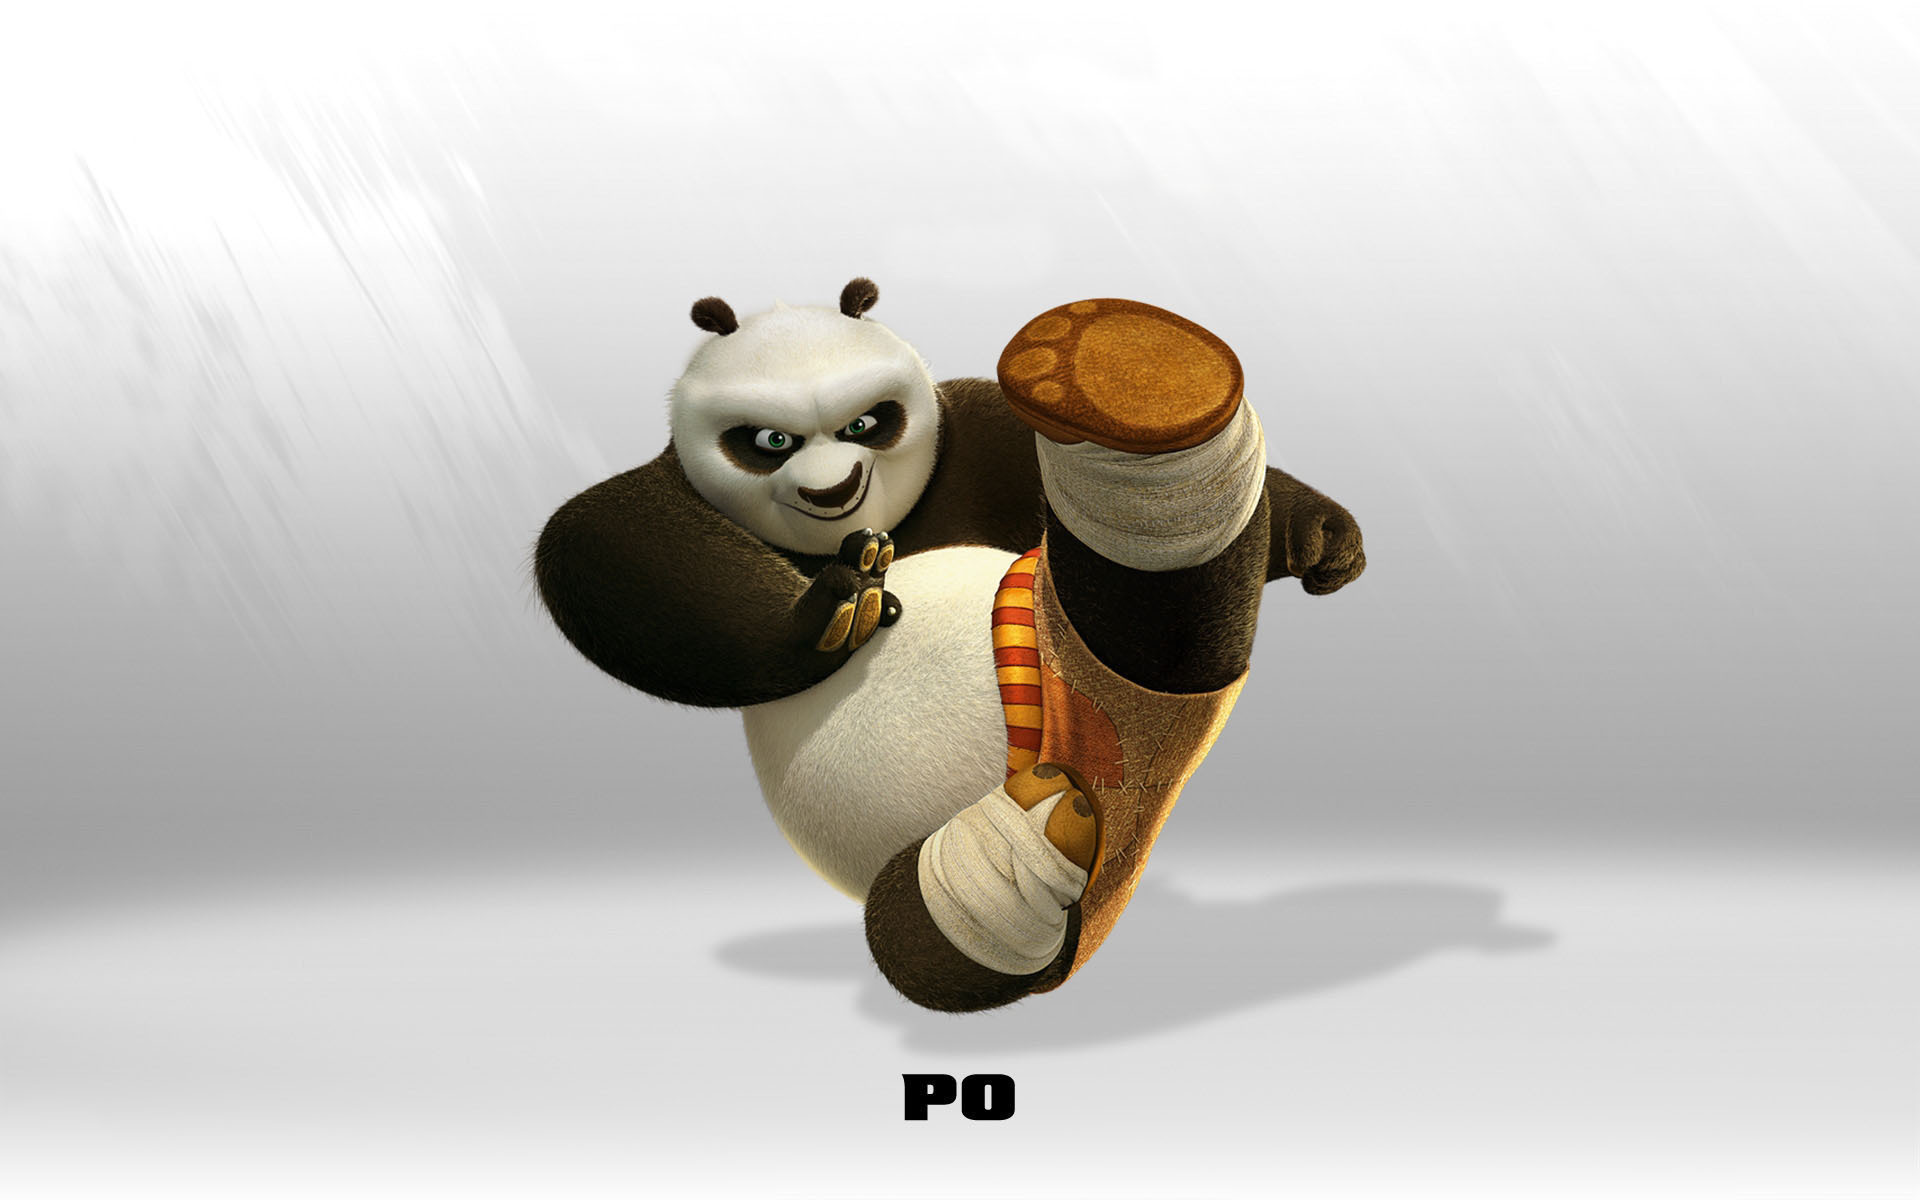 kung fu panda, movie